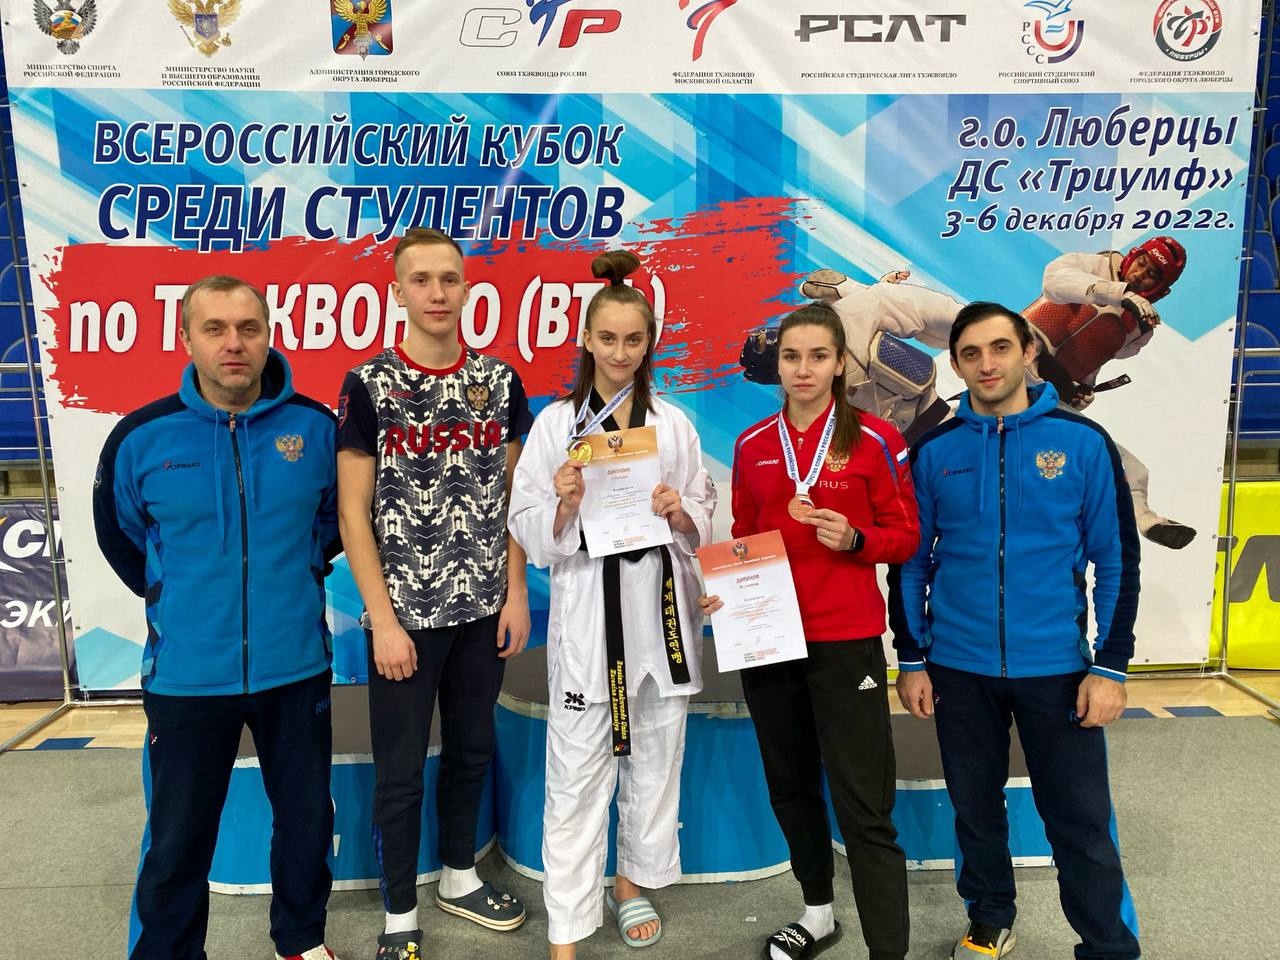 Анастасия Зарезина победила на Всероссийском кубке